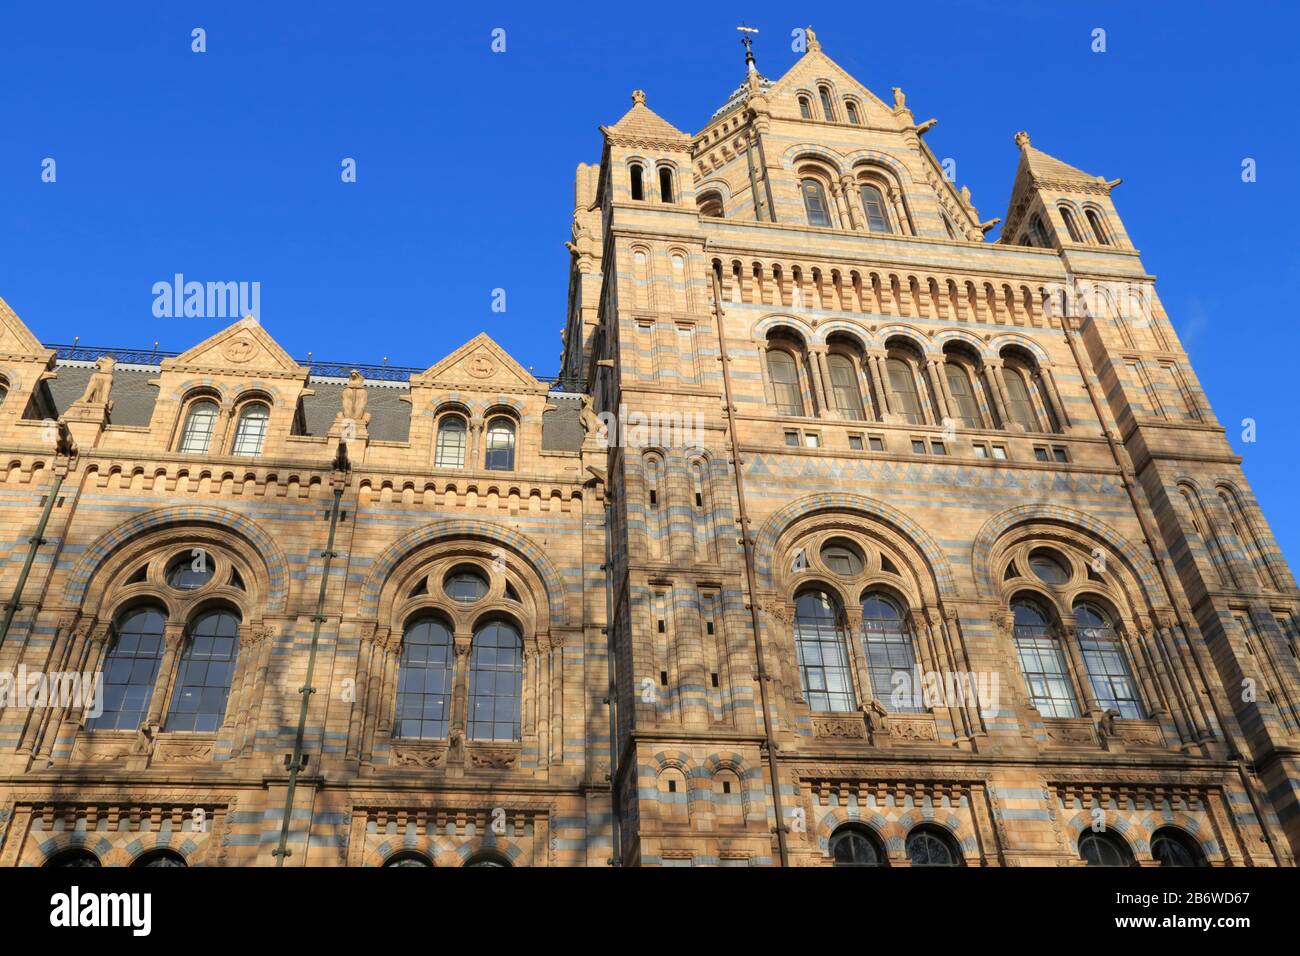 Gros plan sur l'extérieur du Natural History Museum de Kensington, Londres, Royaume-Uni. Il a été conçu par Alfred Waterhouse pour ressembler à une grande cathédrale. Banque D'Images